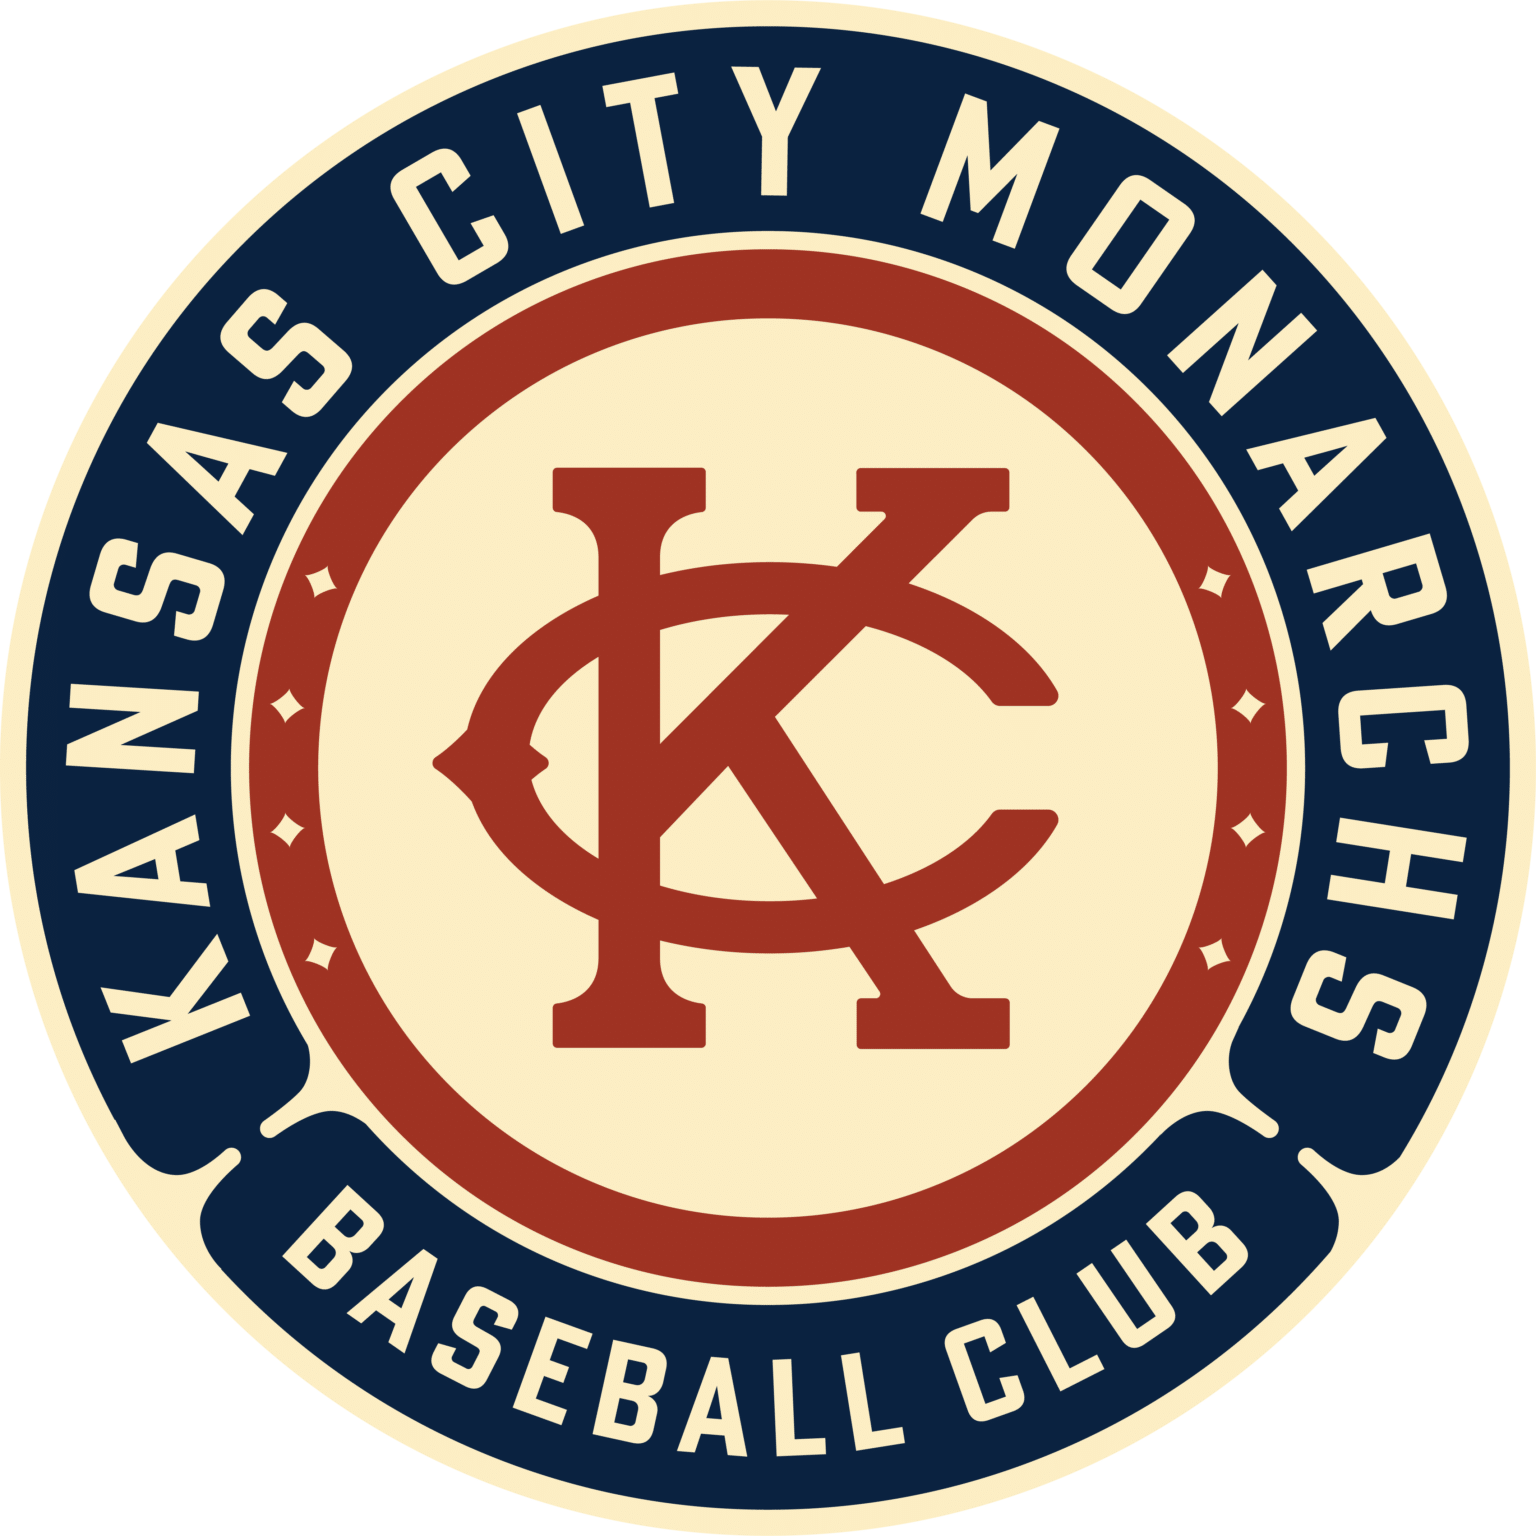 KC Monarchs popup shop opens April 7 at Legends Outlets Kansas City